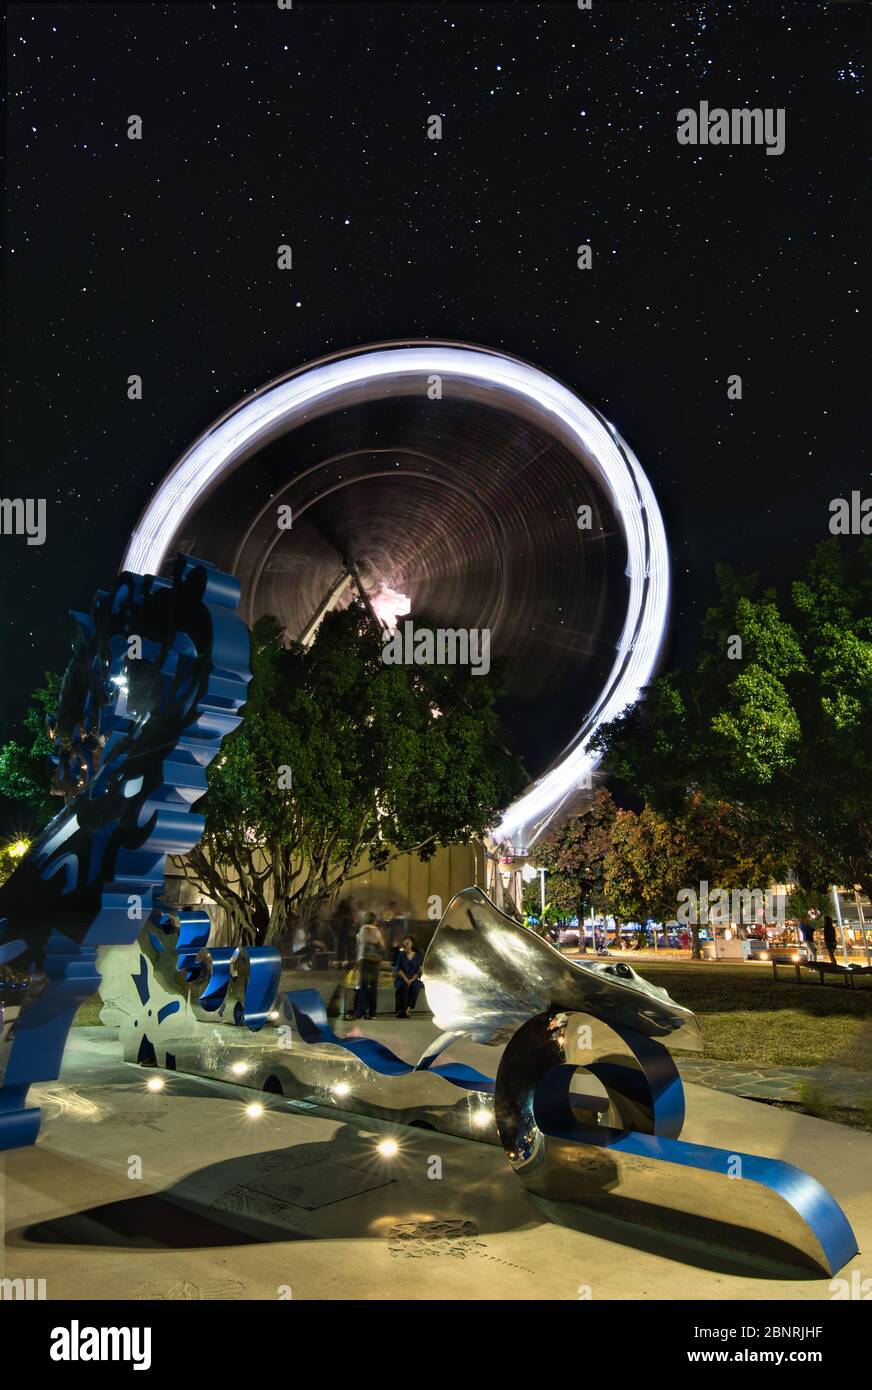 L'attraction Reef Eye Ferris Wheel Ride et l'installation spectaculaire de travaux d'art sur l'esplanade à Cairns, Queensland, Australie. Banque D'Images